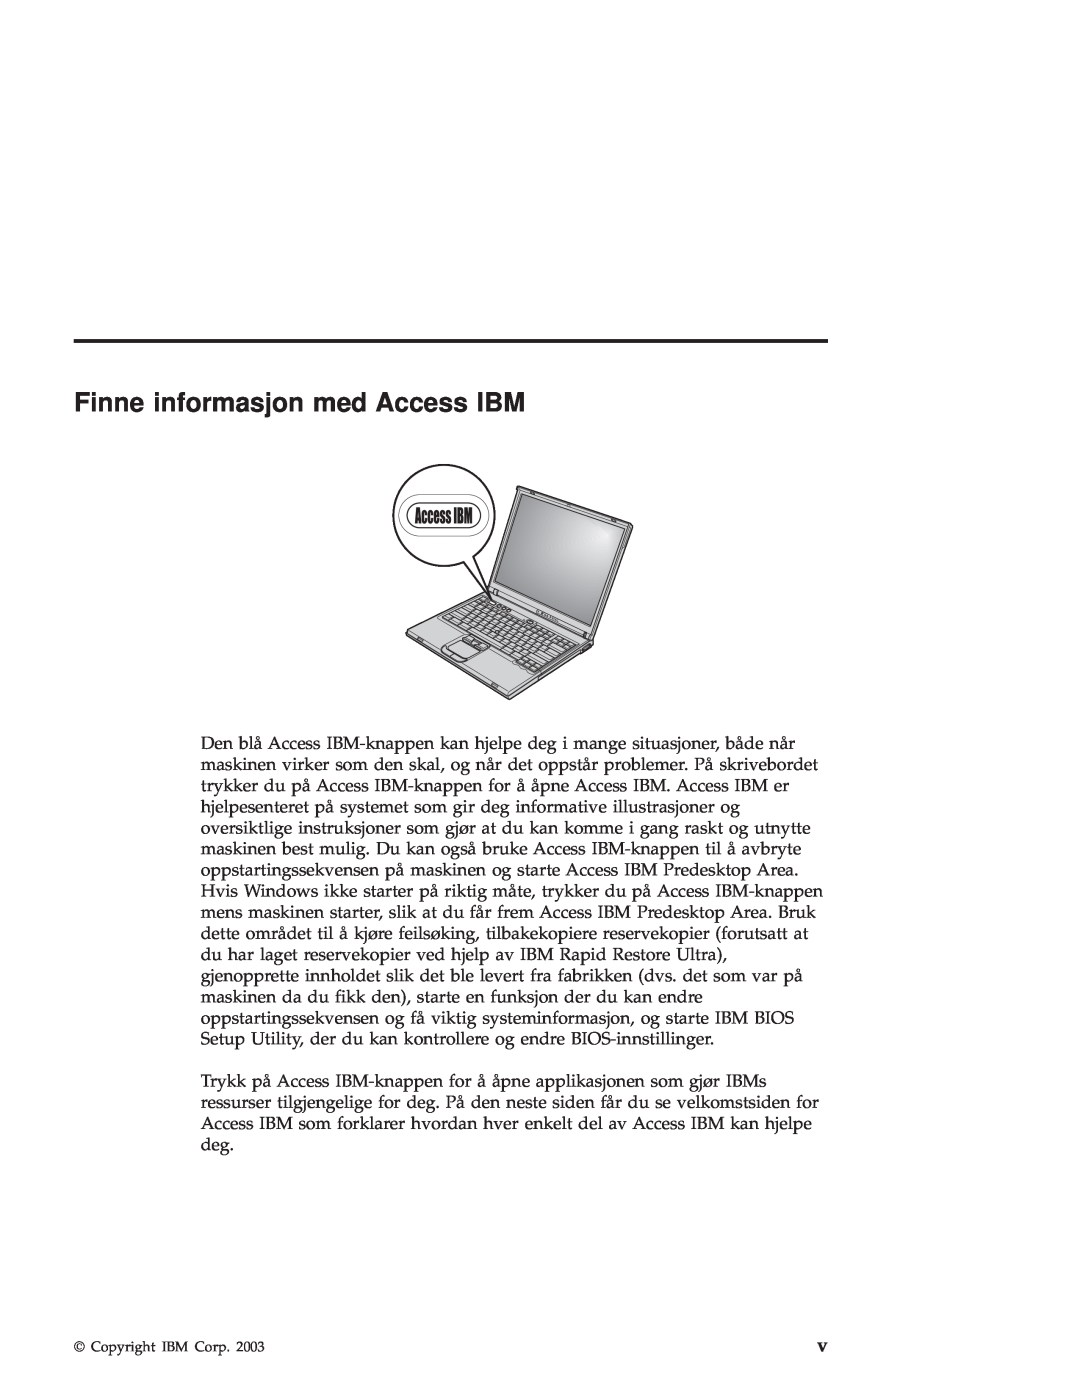 IBM R50 manual Finne informasjon med Access IBM 